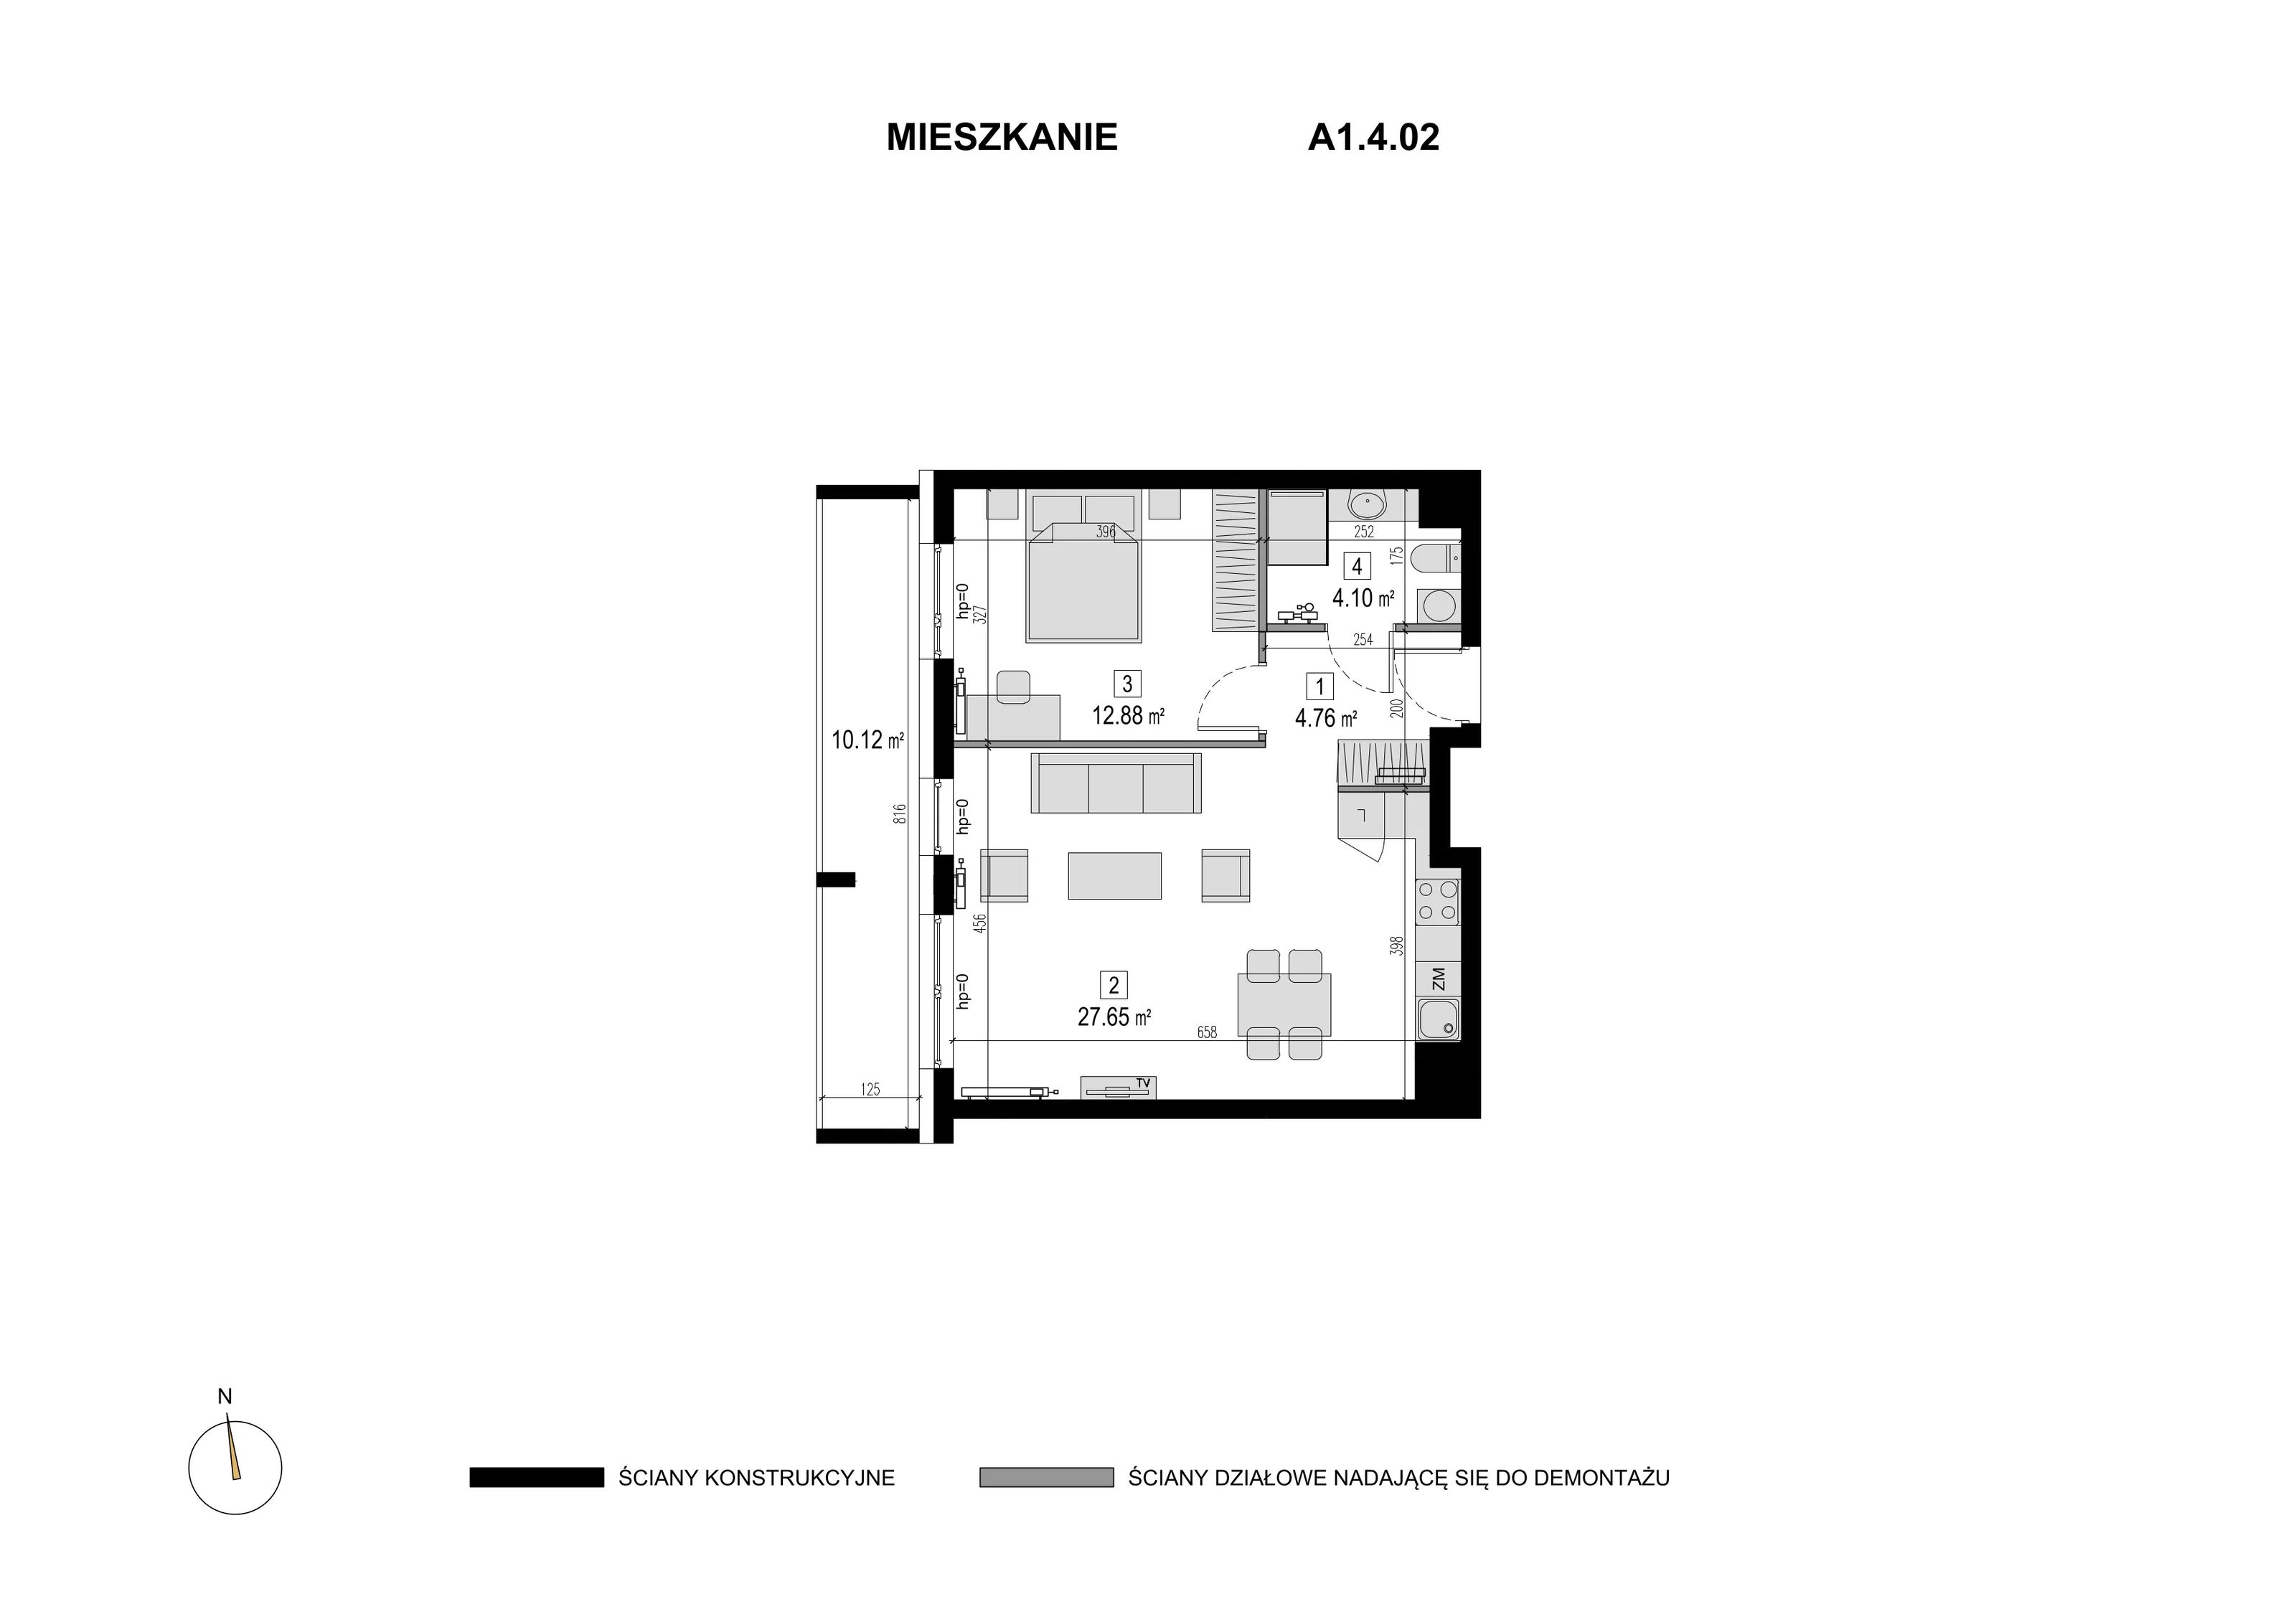 Mieszkanie 49,39 m², piętro 3, oferta nr A1.4.02, Novaforma, Legnica, ul. Chojnowska